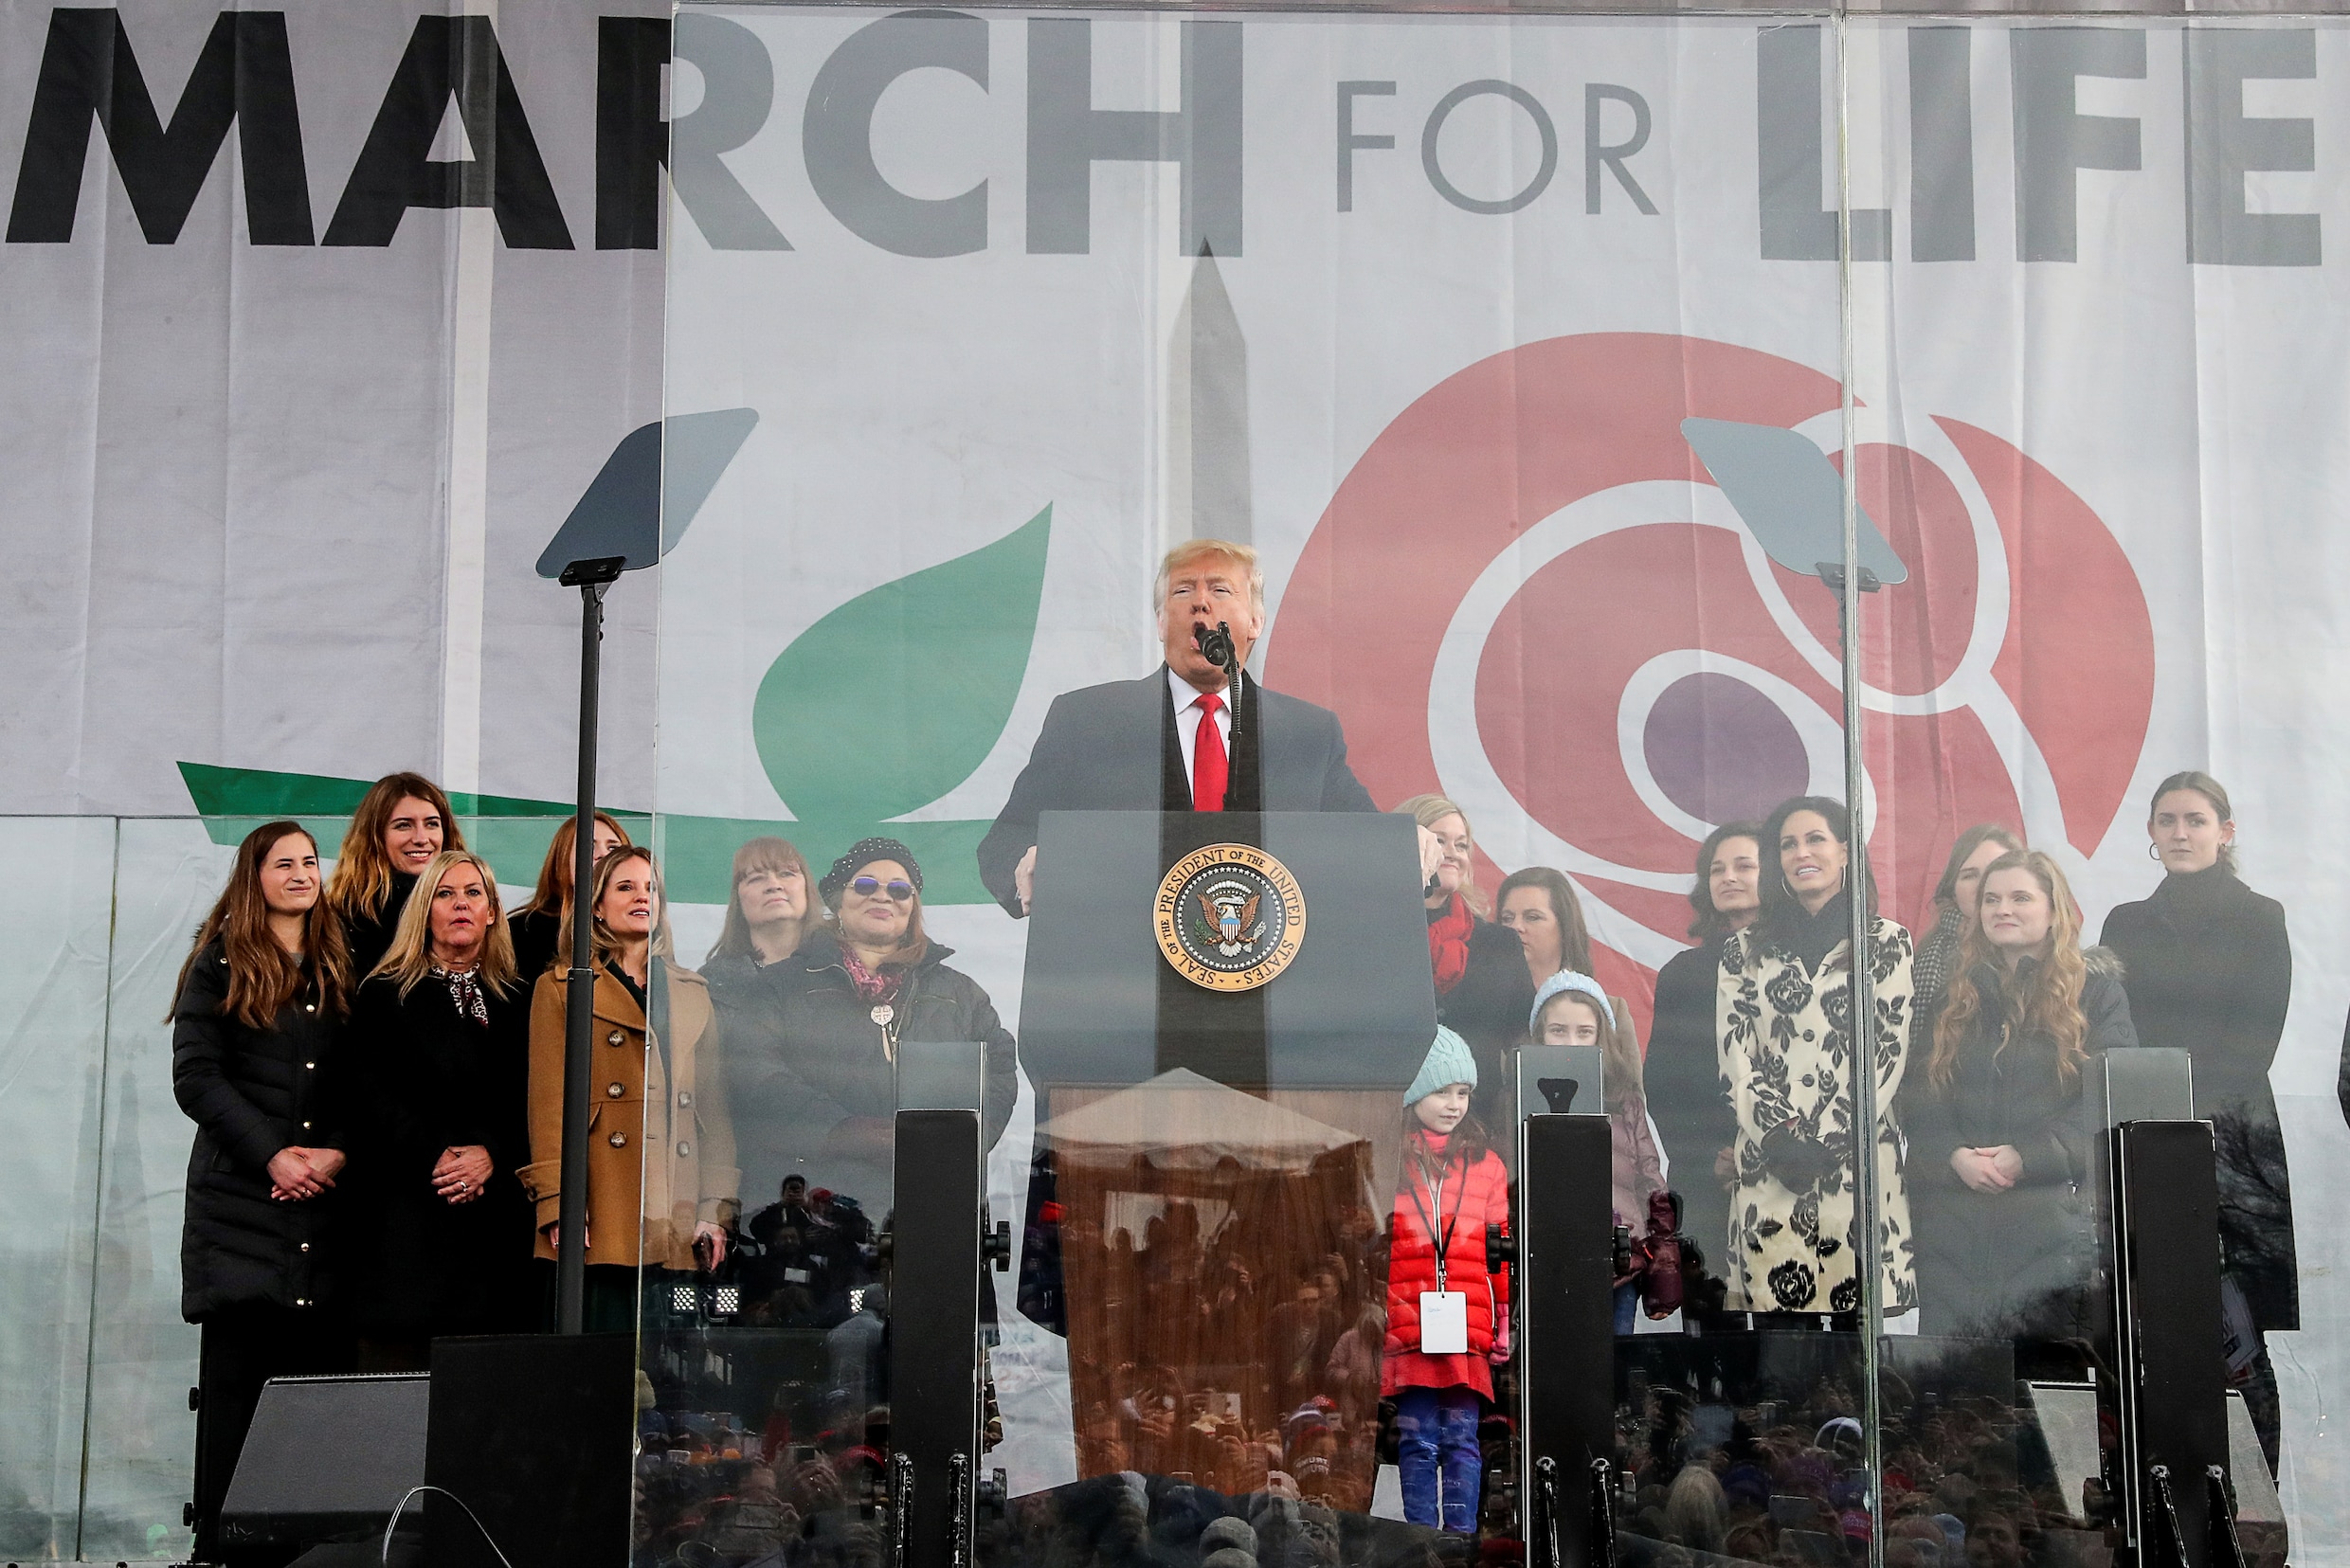 Donald Trump eerste Amerikaanse president die deelneemt aan anti-abortusmars